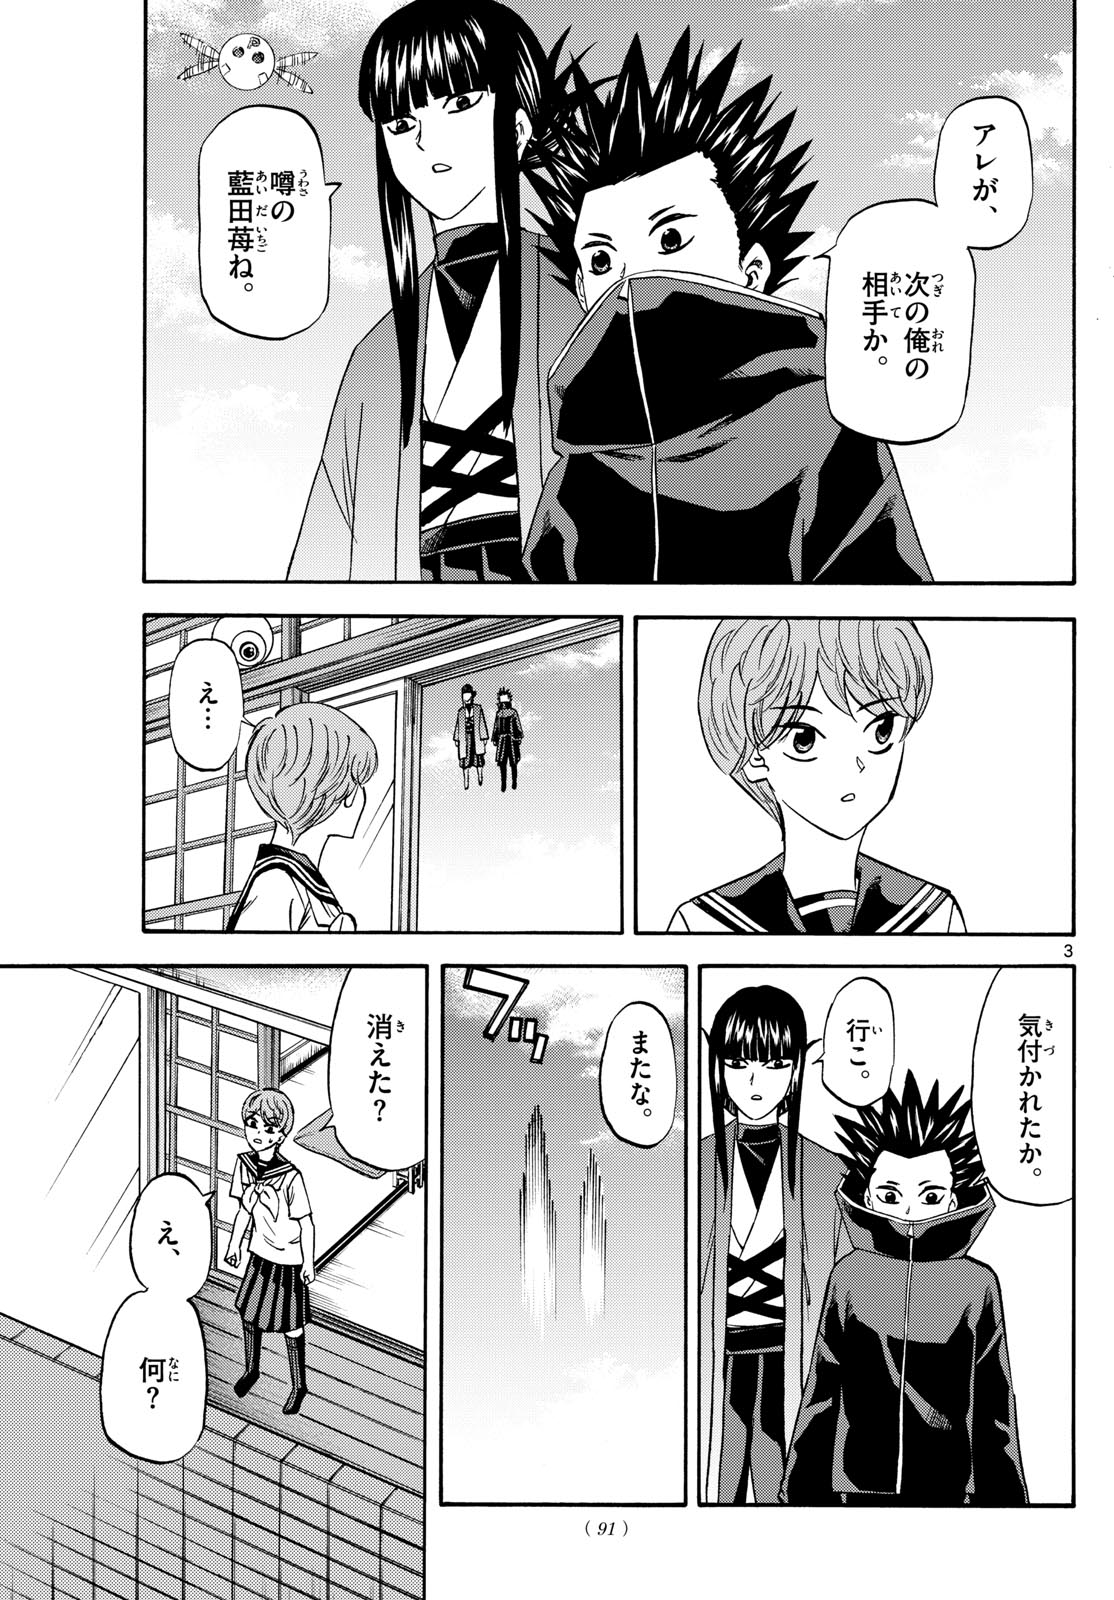 Tatsu to Ichigo - Chapter 191 - Page 3